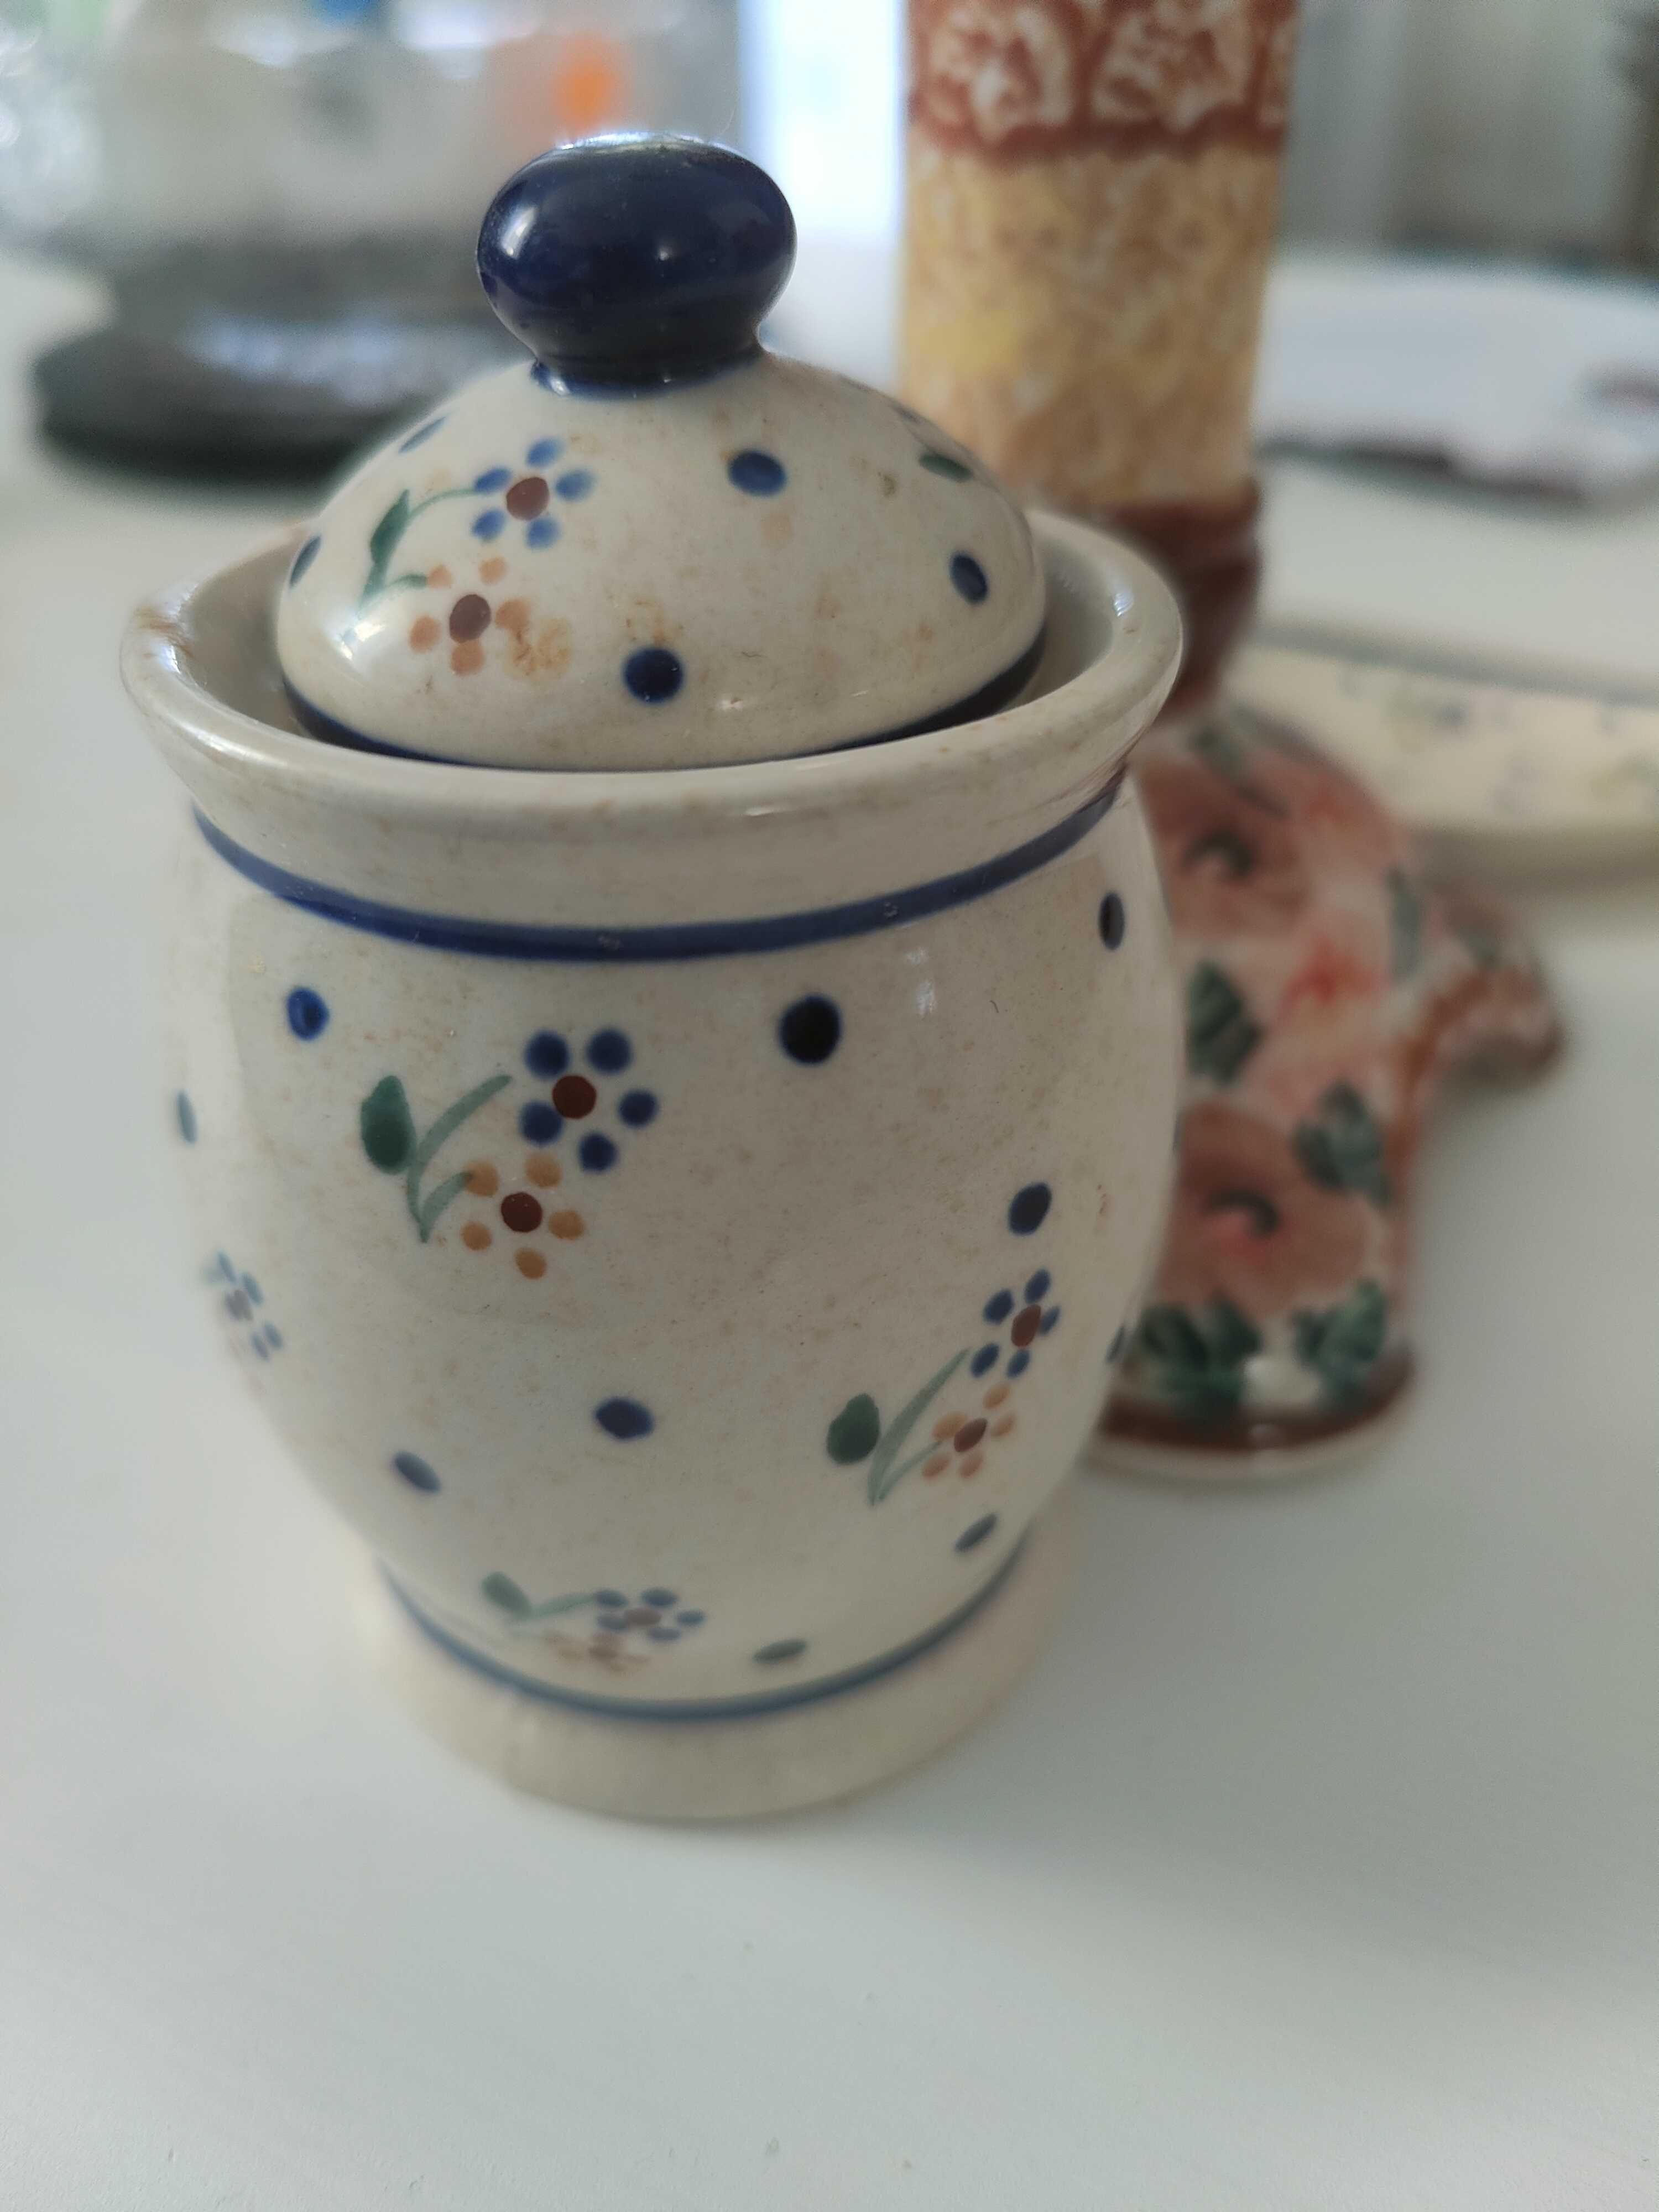 Ceramika Bolesławiec